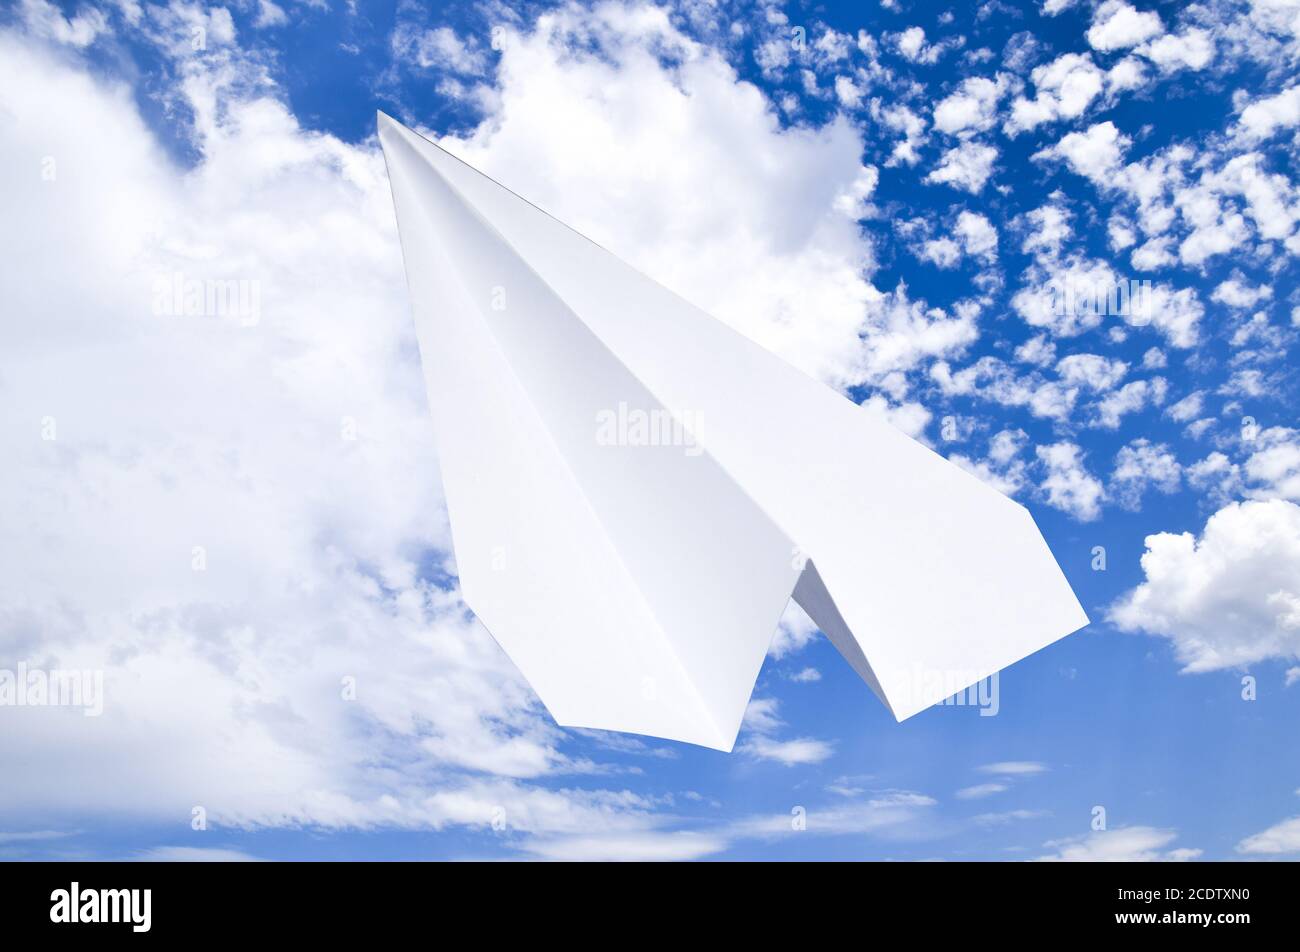 Avion de Papier blanc dans un ciel bleu avec des nuages. Le symbole du message dans le messager Banque D'Images